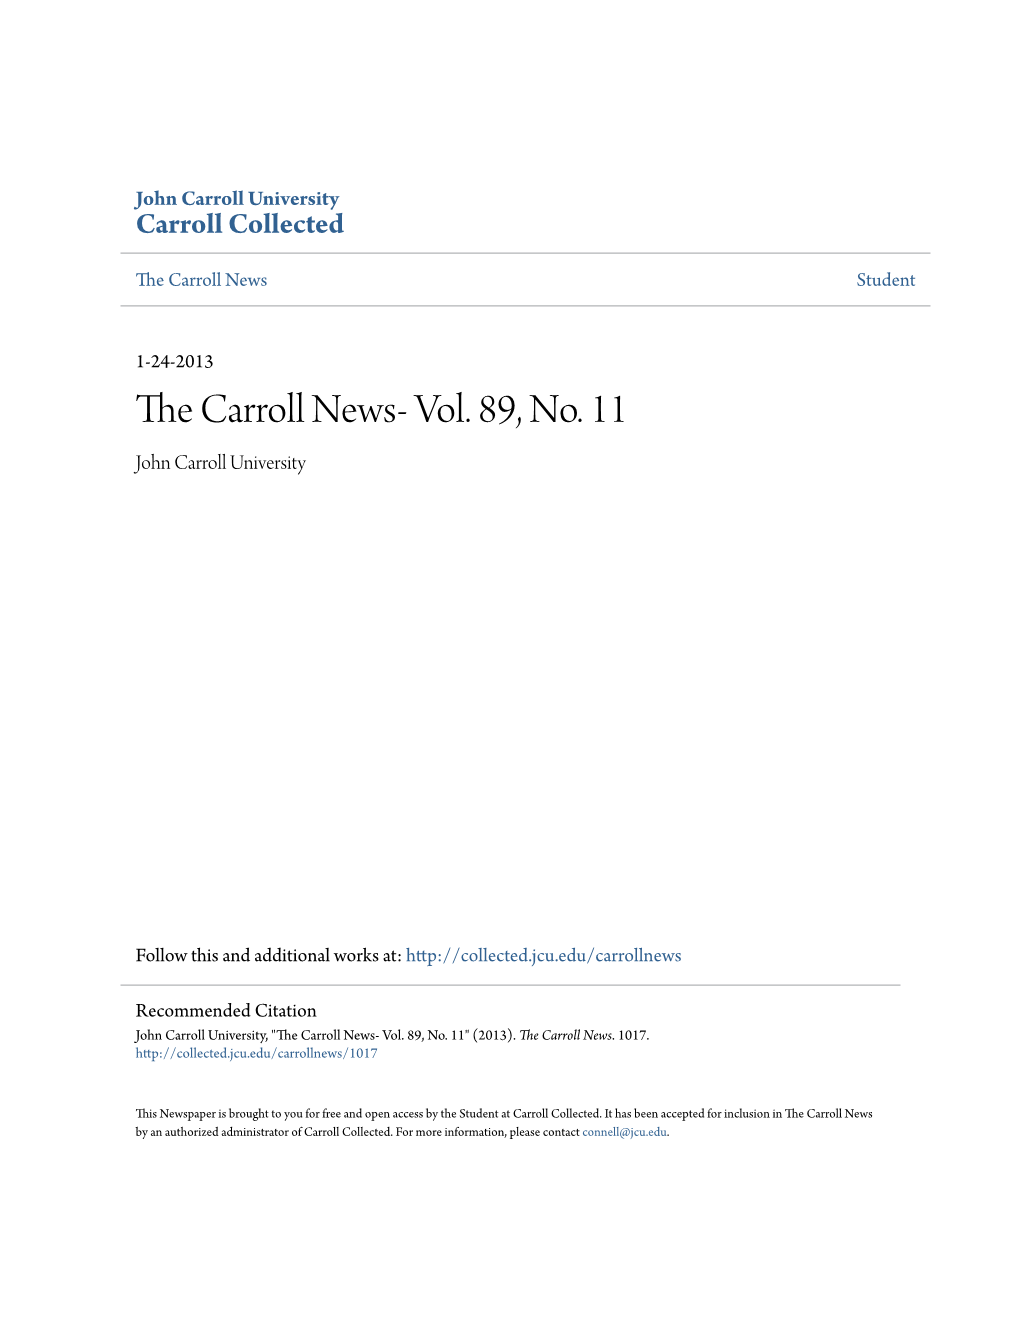 The Carroll News- Vol. 89, No. 11